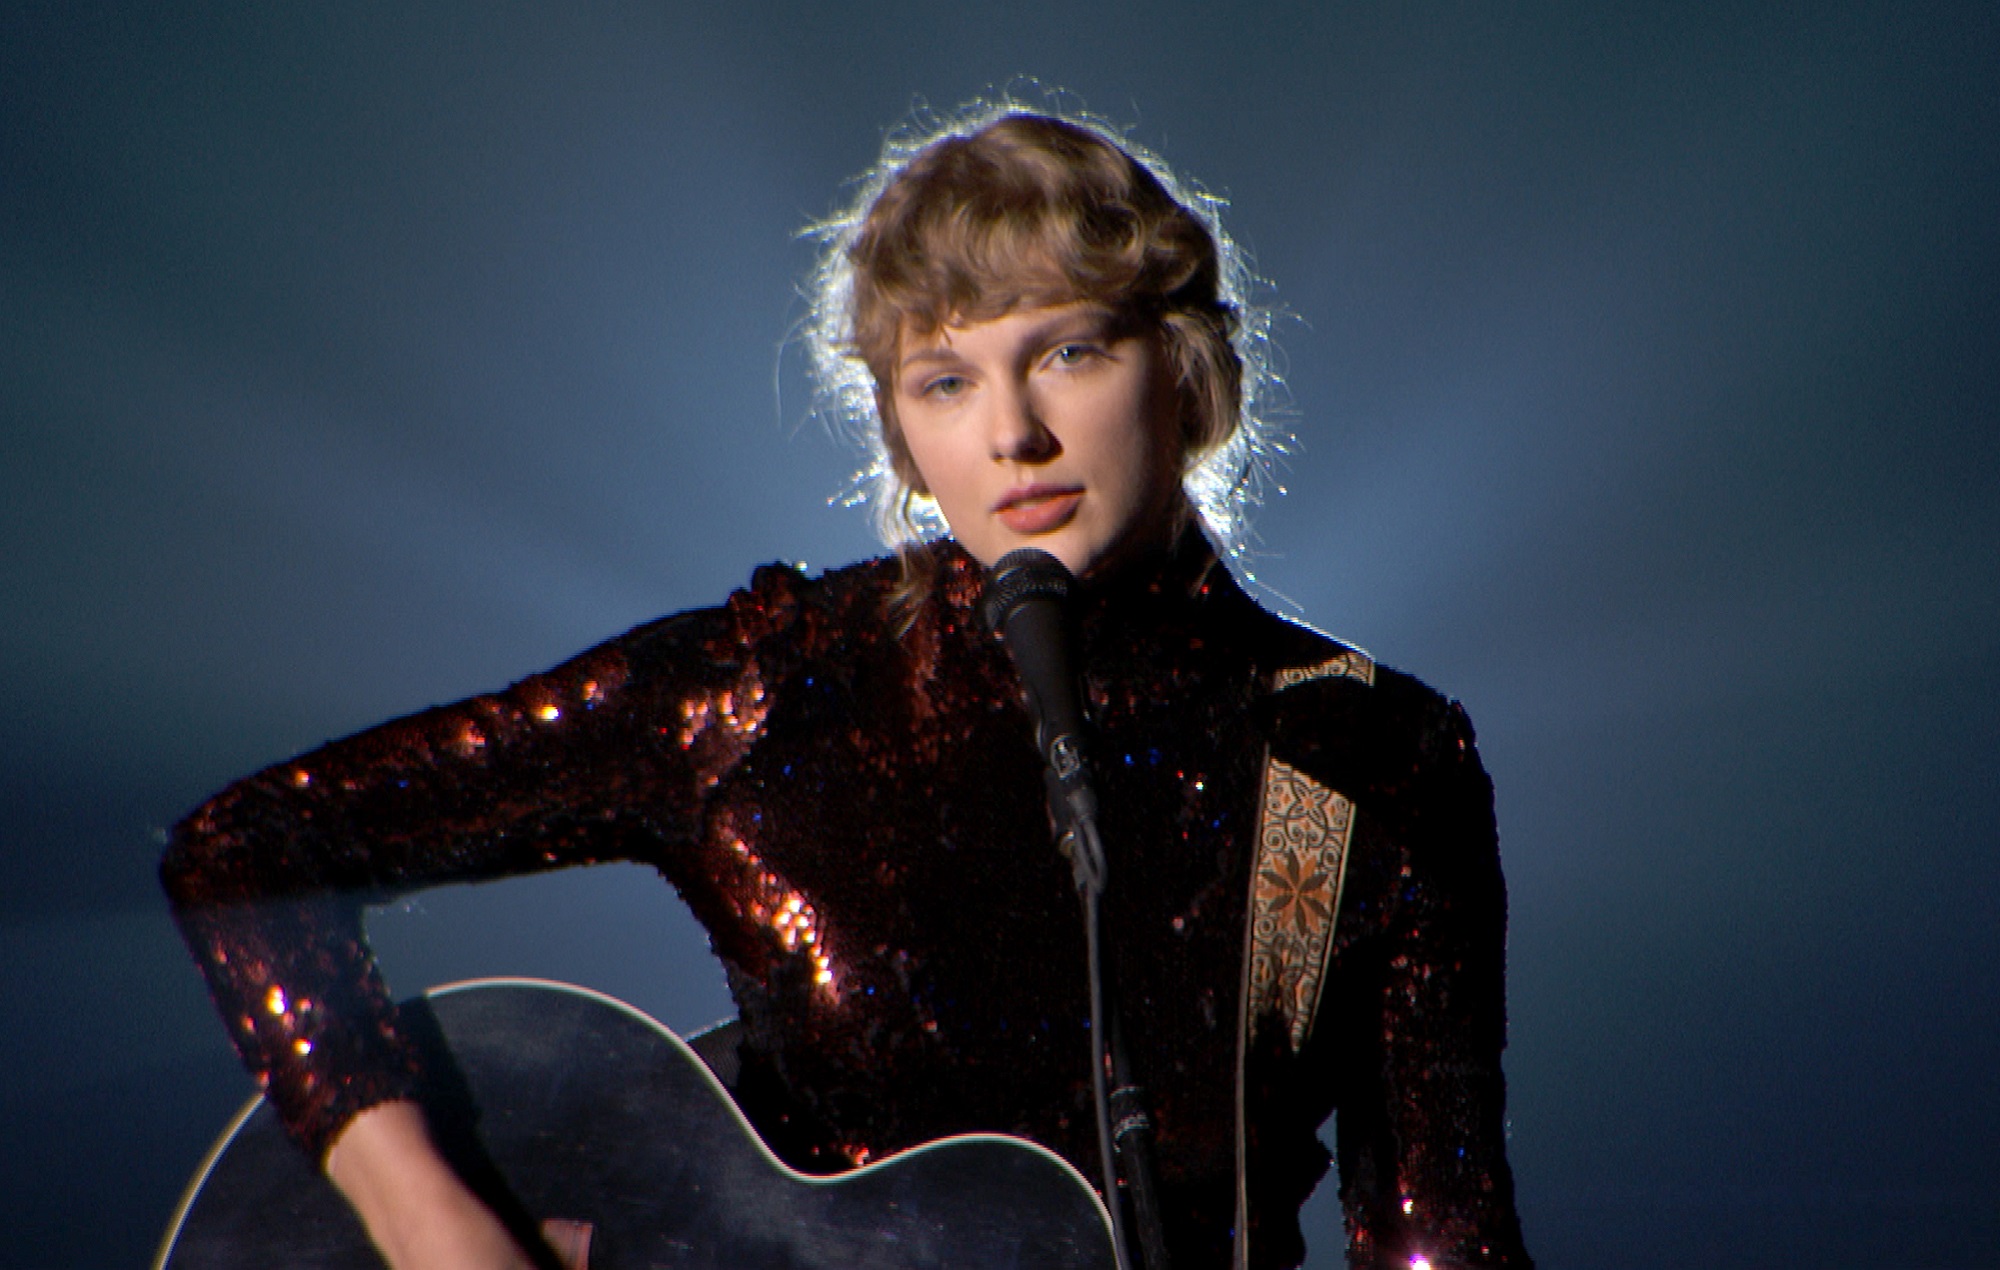 Los fans de Taylor Swift creen que un mensaje oculto en la portada de 'Folklore' significa que un tercer álbum sorpresa está en camino